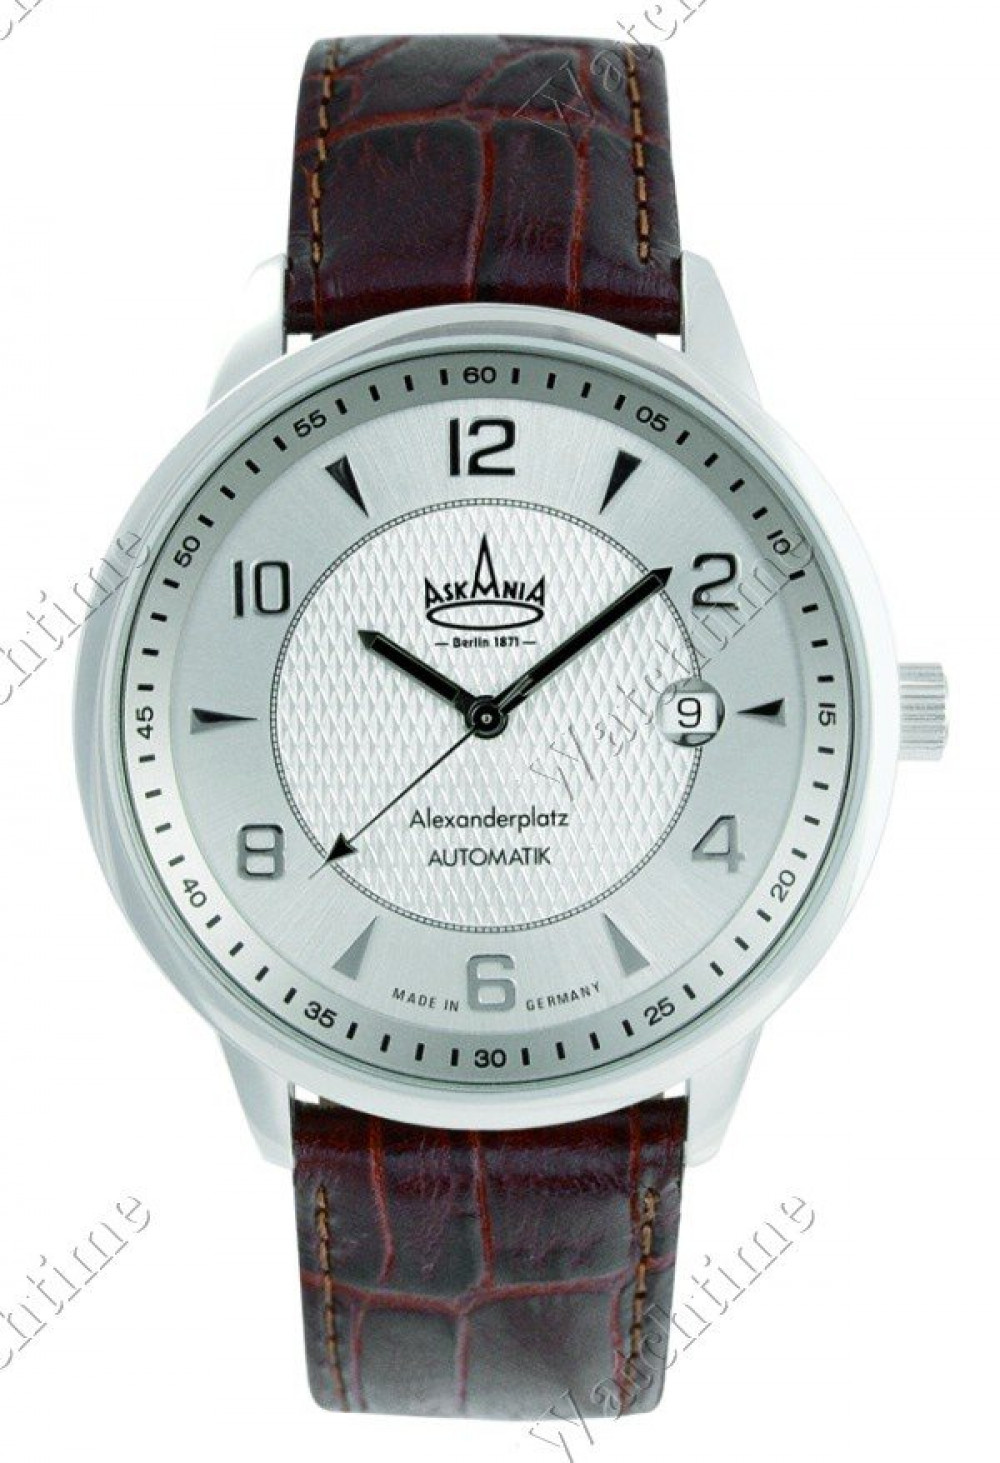 Zegarek firmy Askania, model Alexanderplatz